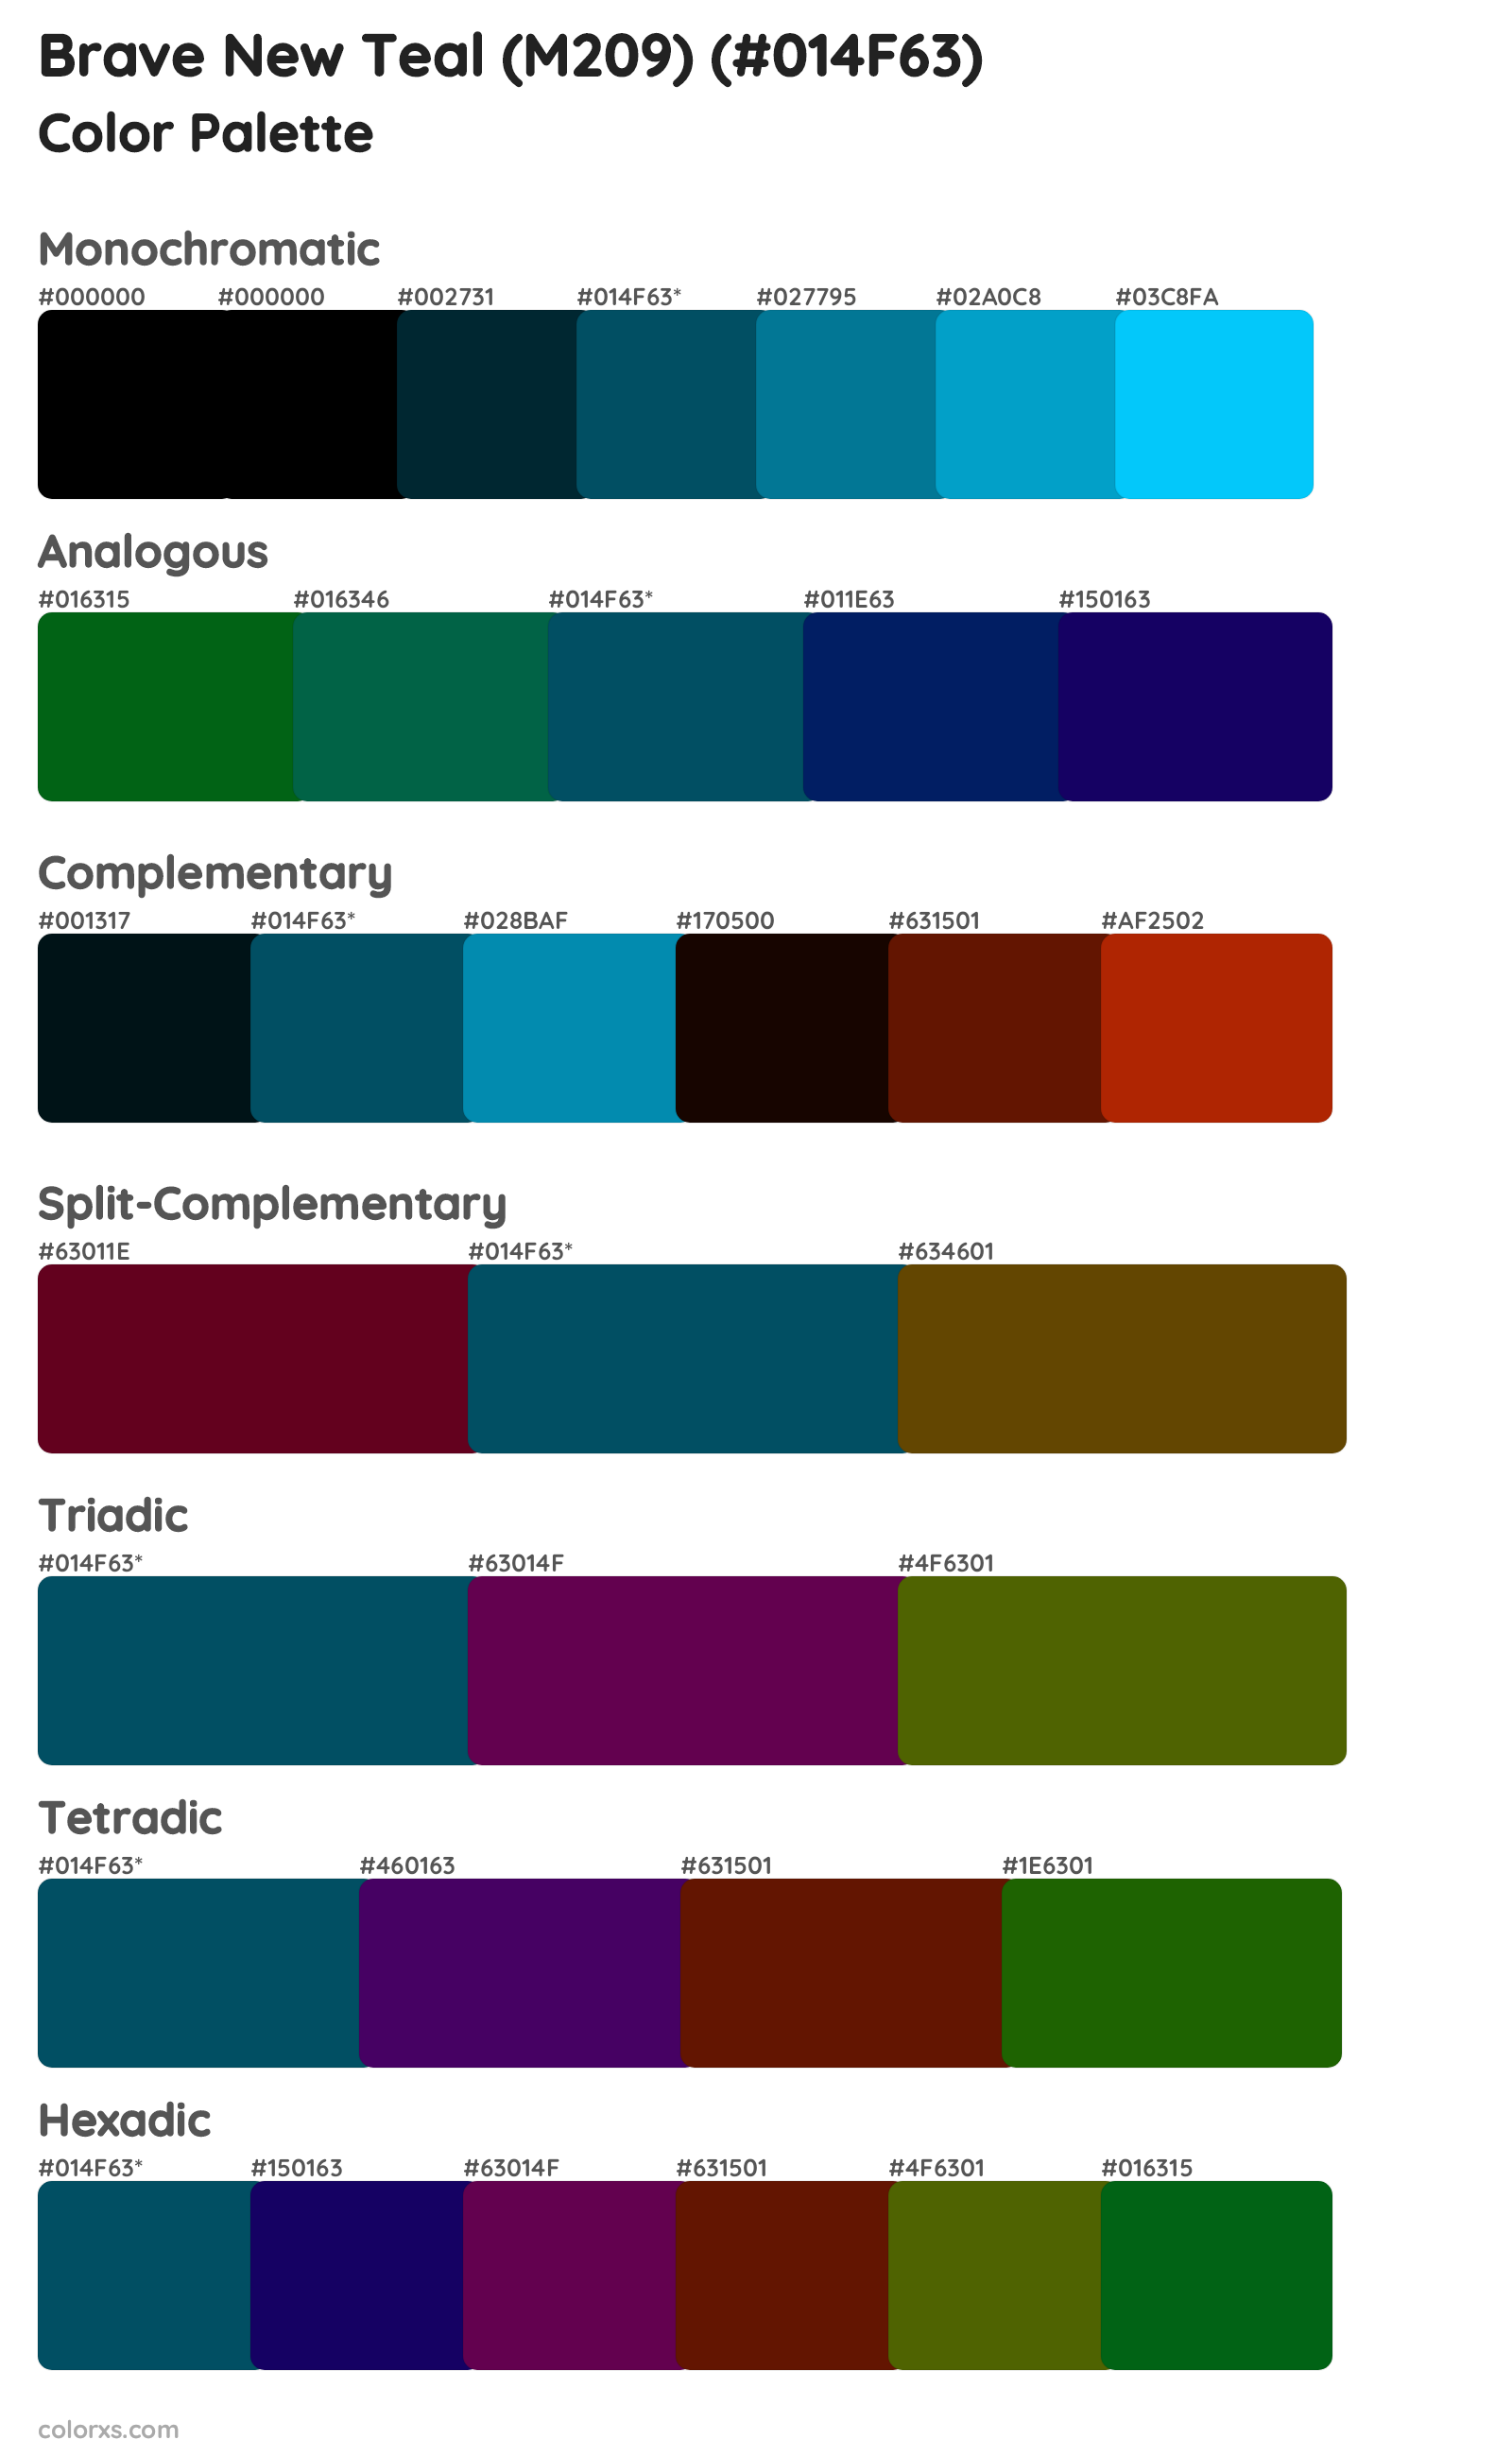 Brave New Teal (M209) Color Scheme Palettes